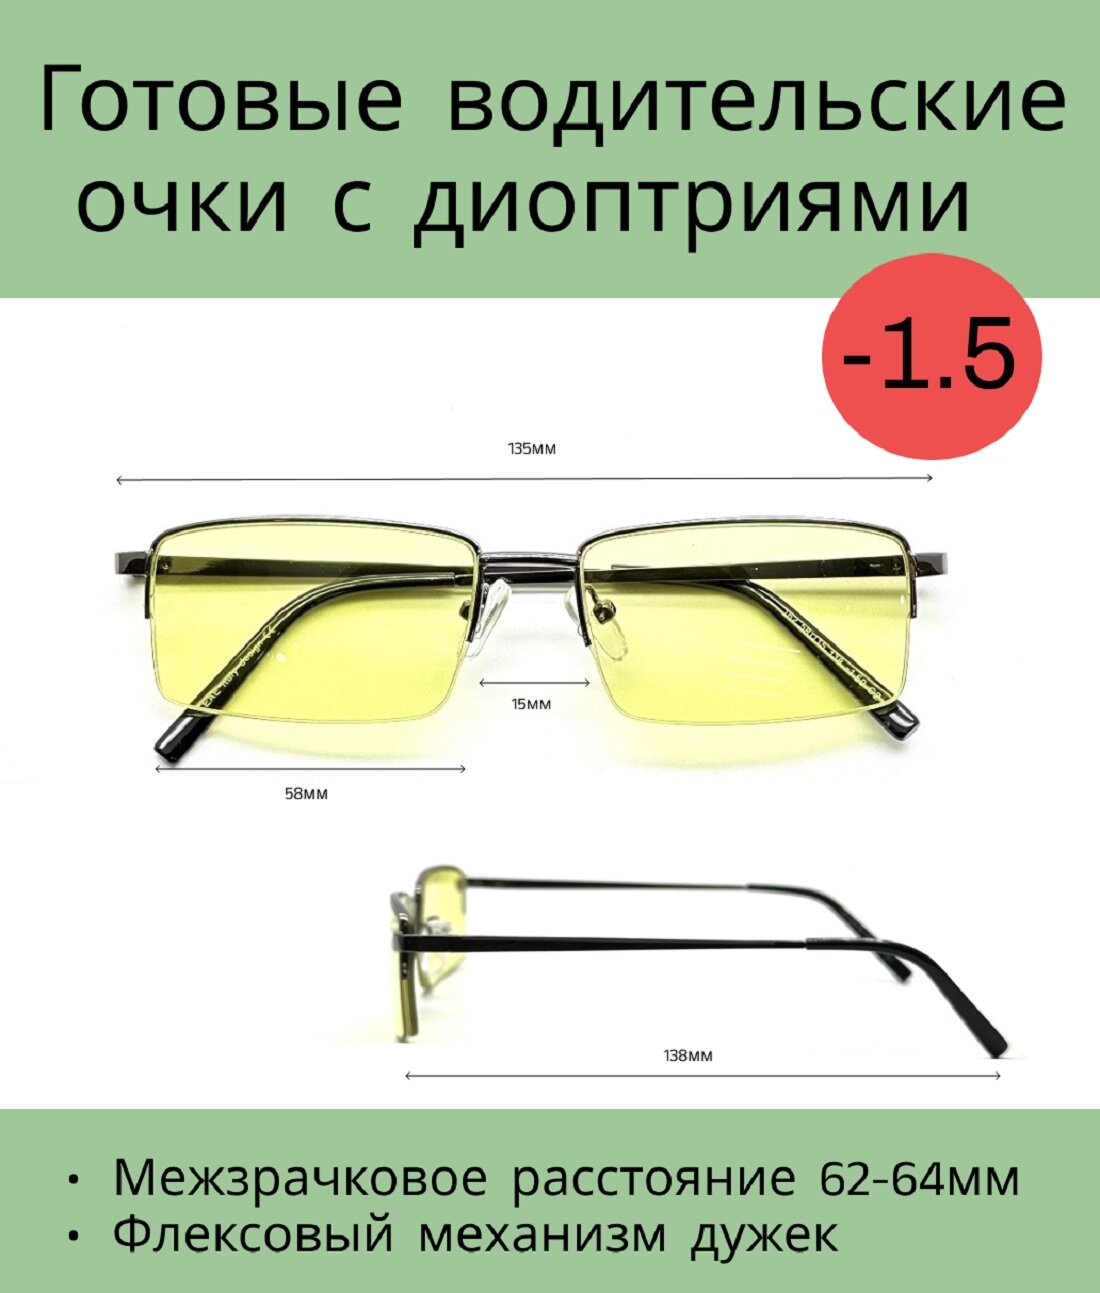 Готовые водительские очки с диоптриями -1.5